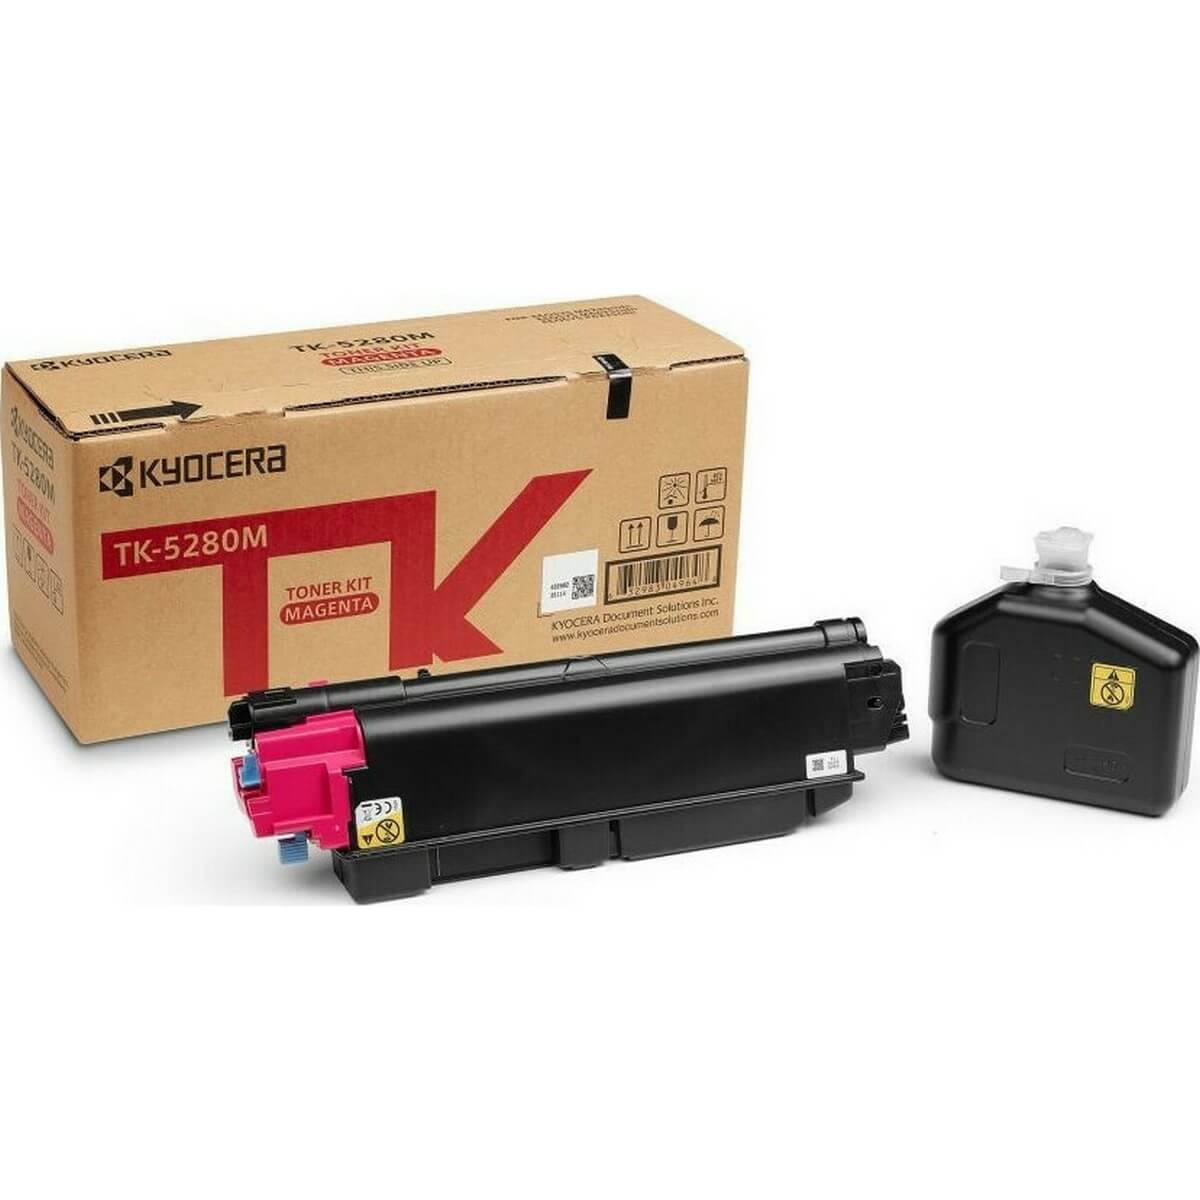 Toner Laser Kyocera Mita TK-5280M Magenta